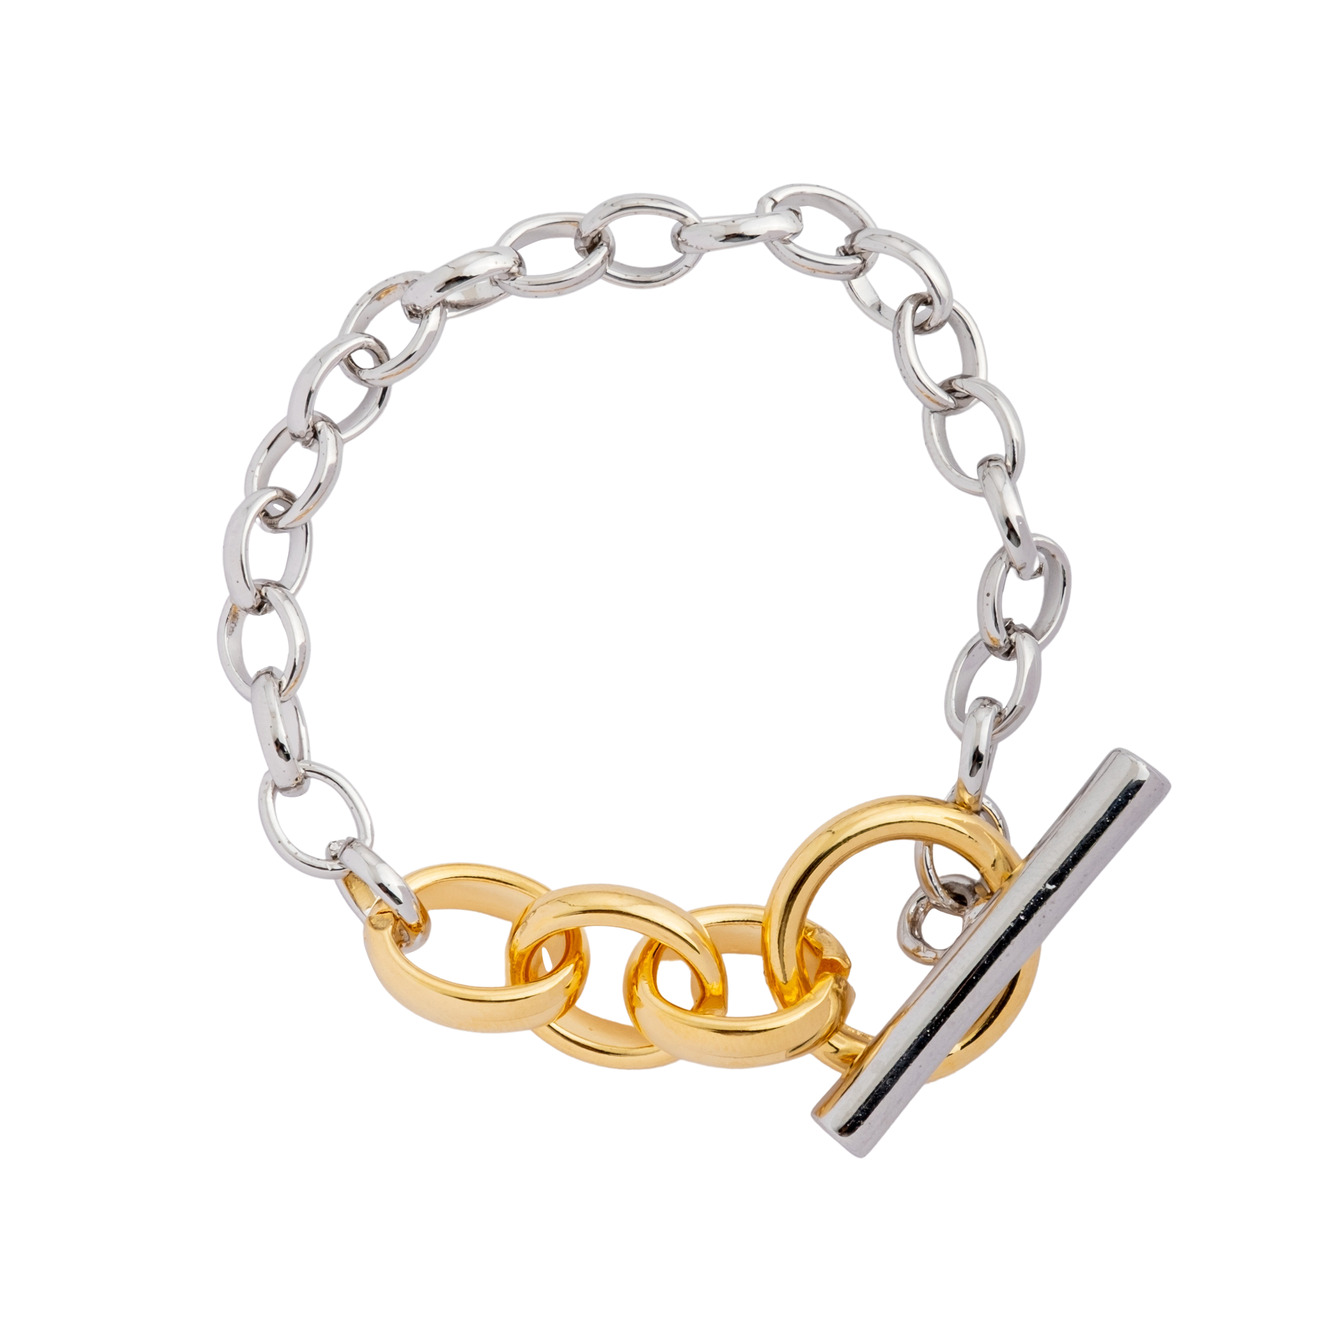 Aqua Серебристый браслет-цепь с золотистым замком aqua серебристый тройной браслет